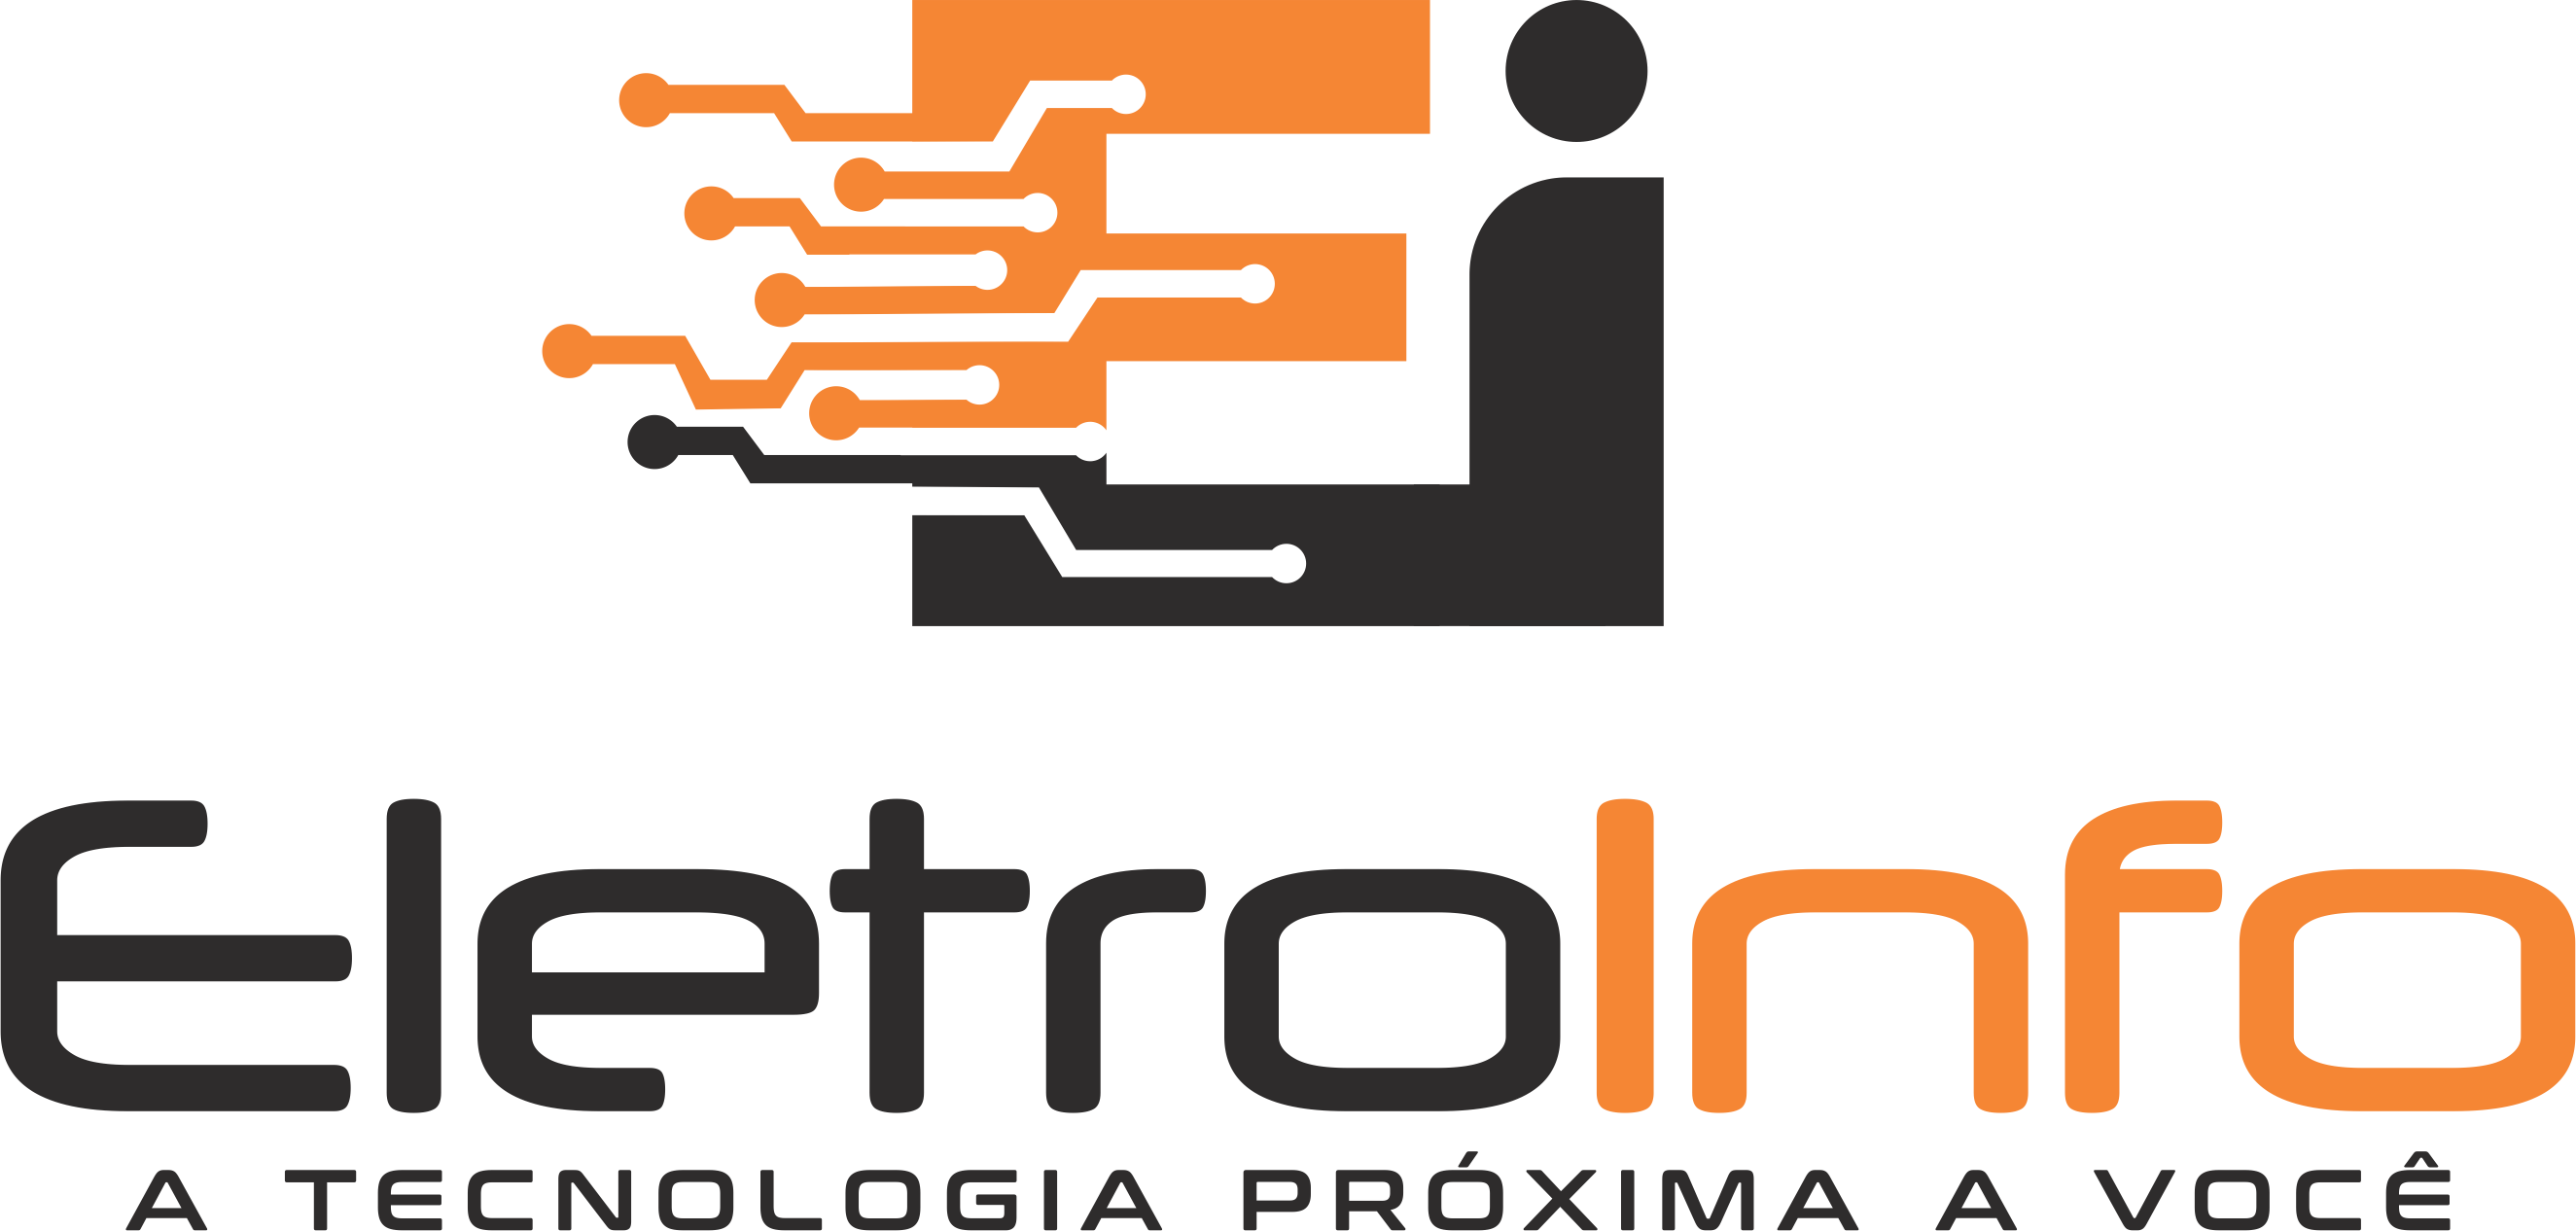 EletroInfo logo